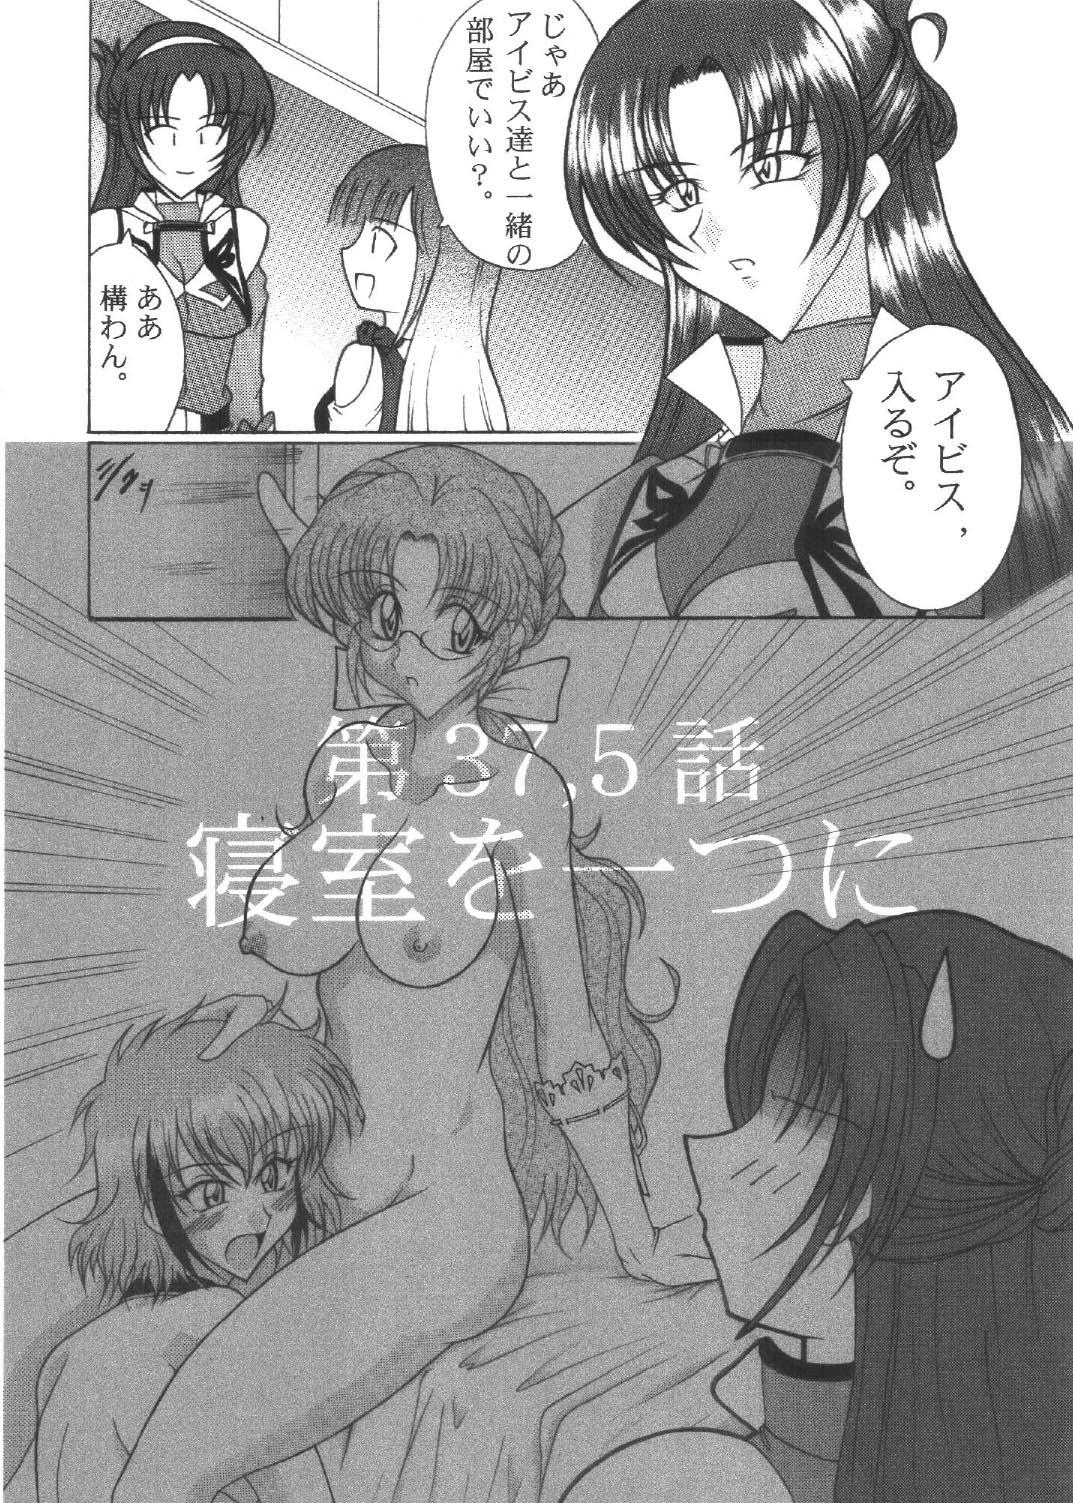 Real Couple Ryuusei, Yoru o Kirisai te Ver . X - Super robot wars Novia - Page 5